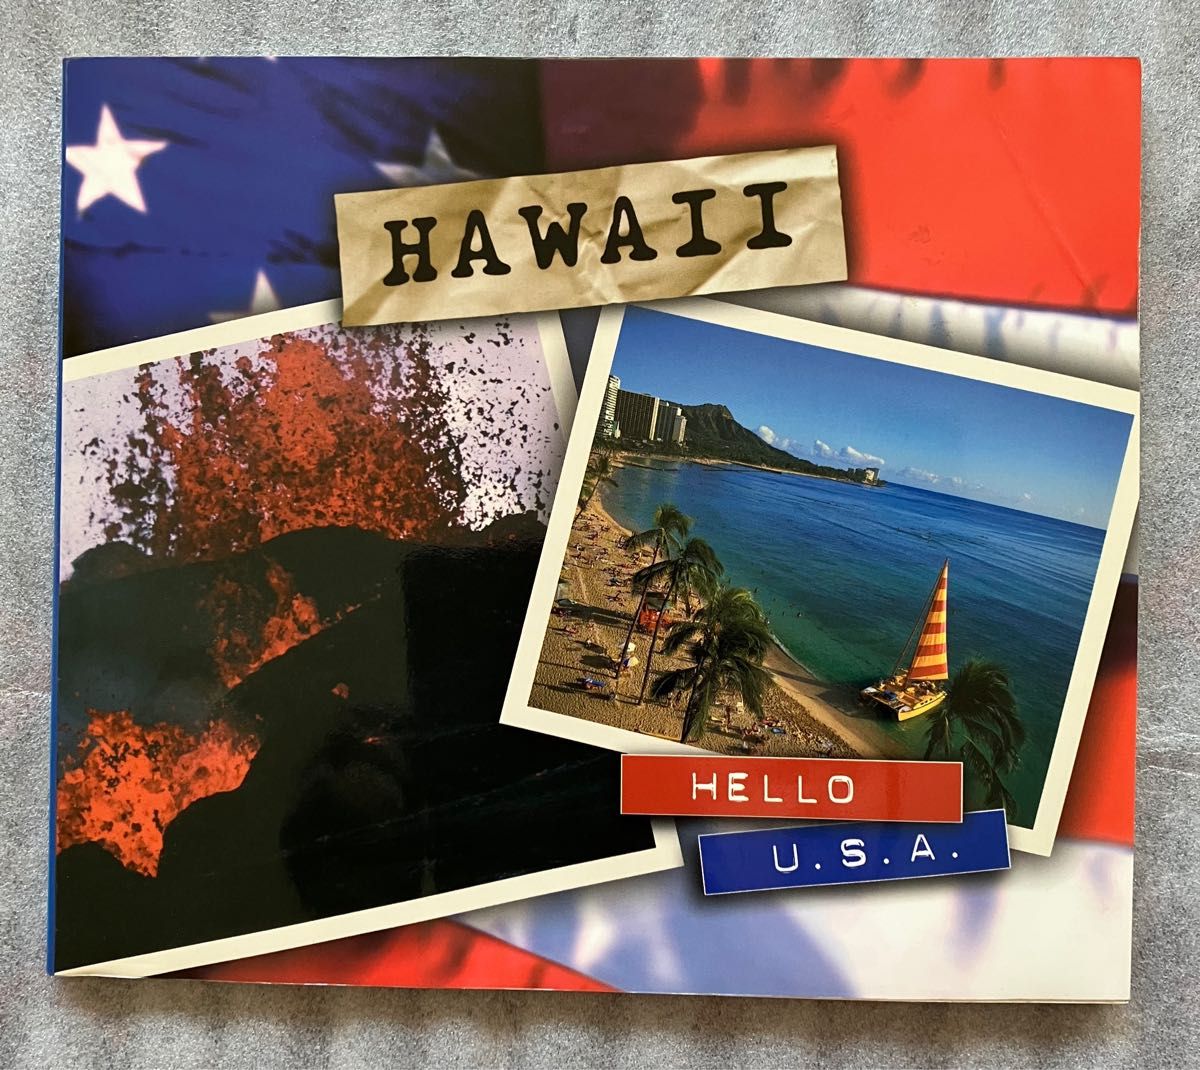 Hawaii Hello U.S.A.